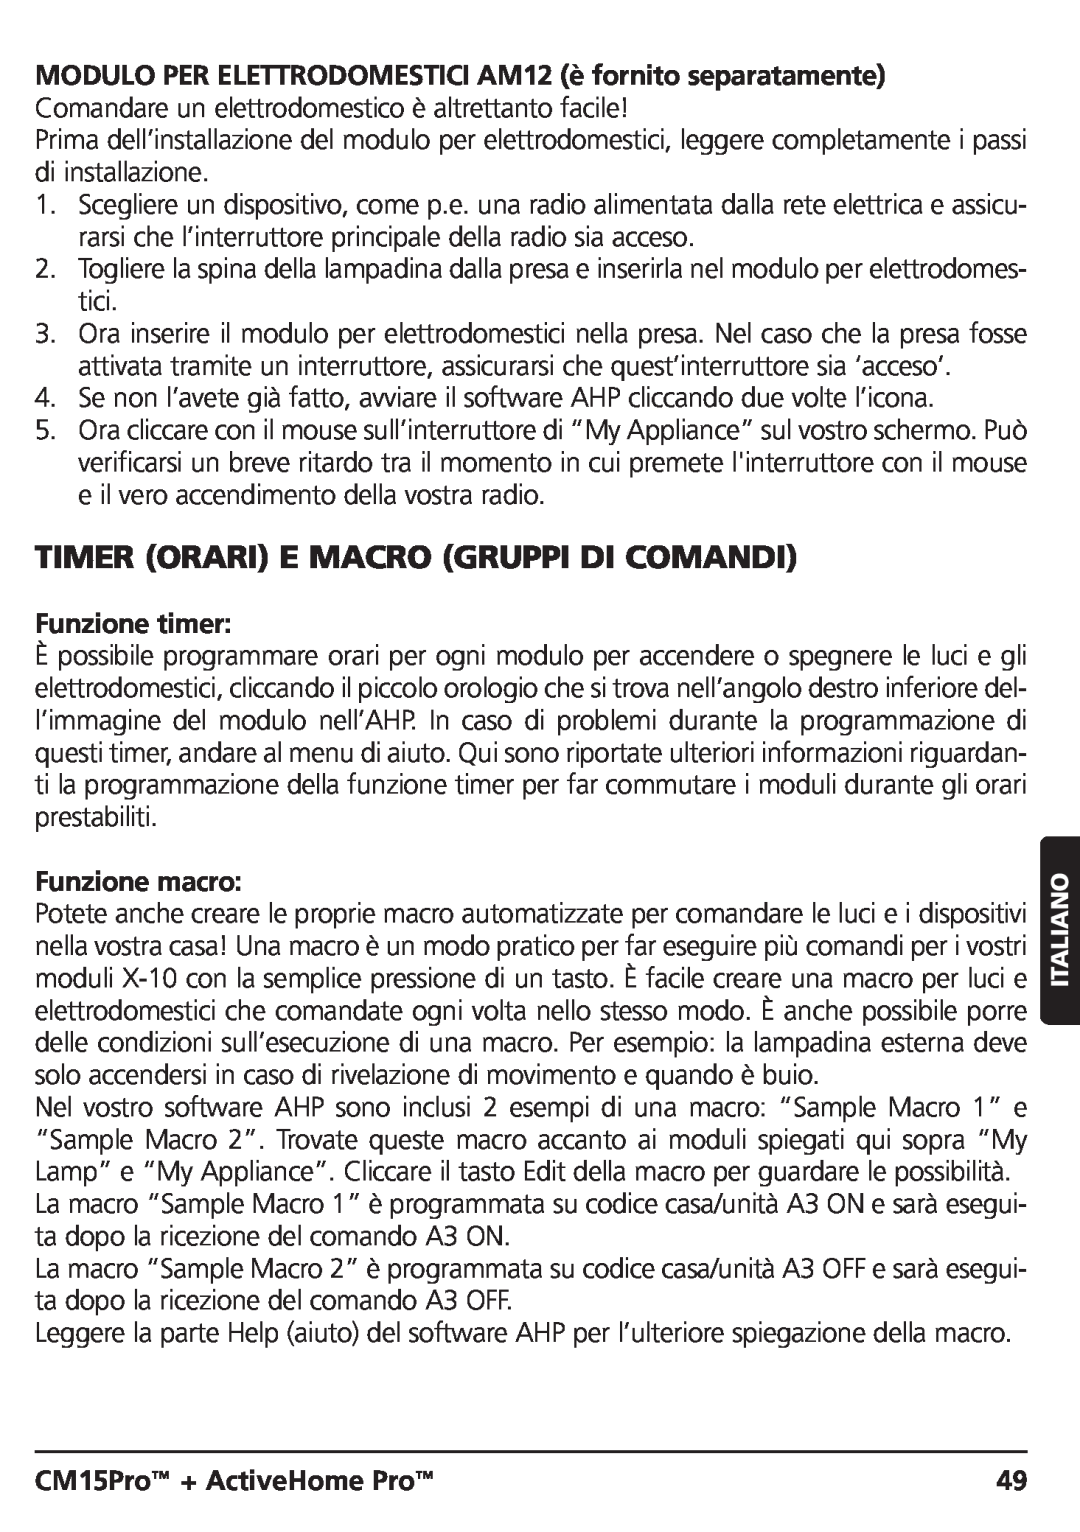 Marmitek CM15PRO manual Timer Orari E Macro Gruppi Di Comandi, Funzione timer, Funzione macro, CM15Pro + ActiveHome Pro 